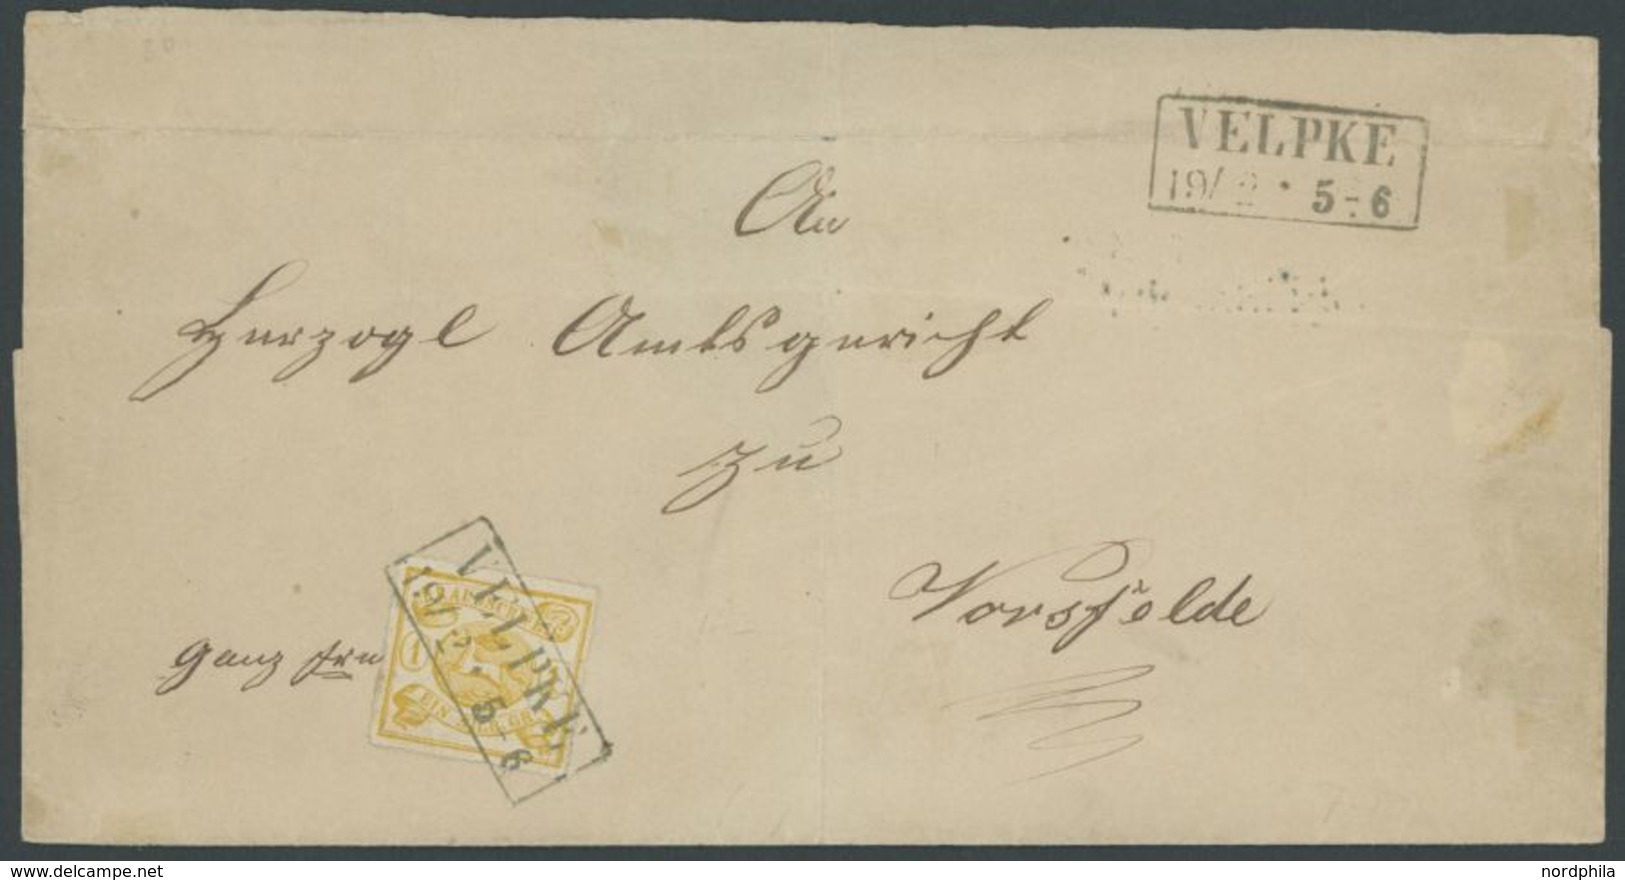 BRAUNSCHWEIG 14A BRIEF, 1865, 1 Sgr. Gelbocker, Durchstochen 16, Kabinettstück Mit R2 VELPKE Auf Nicht Perfektem Brief N - Brunswick